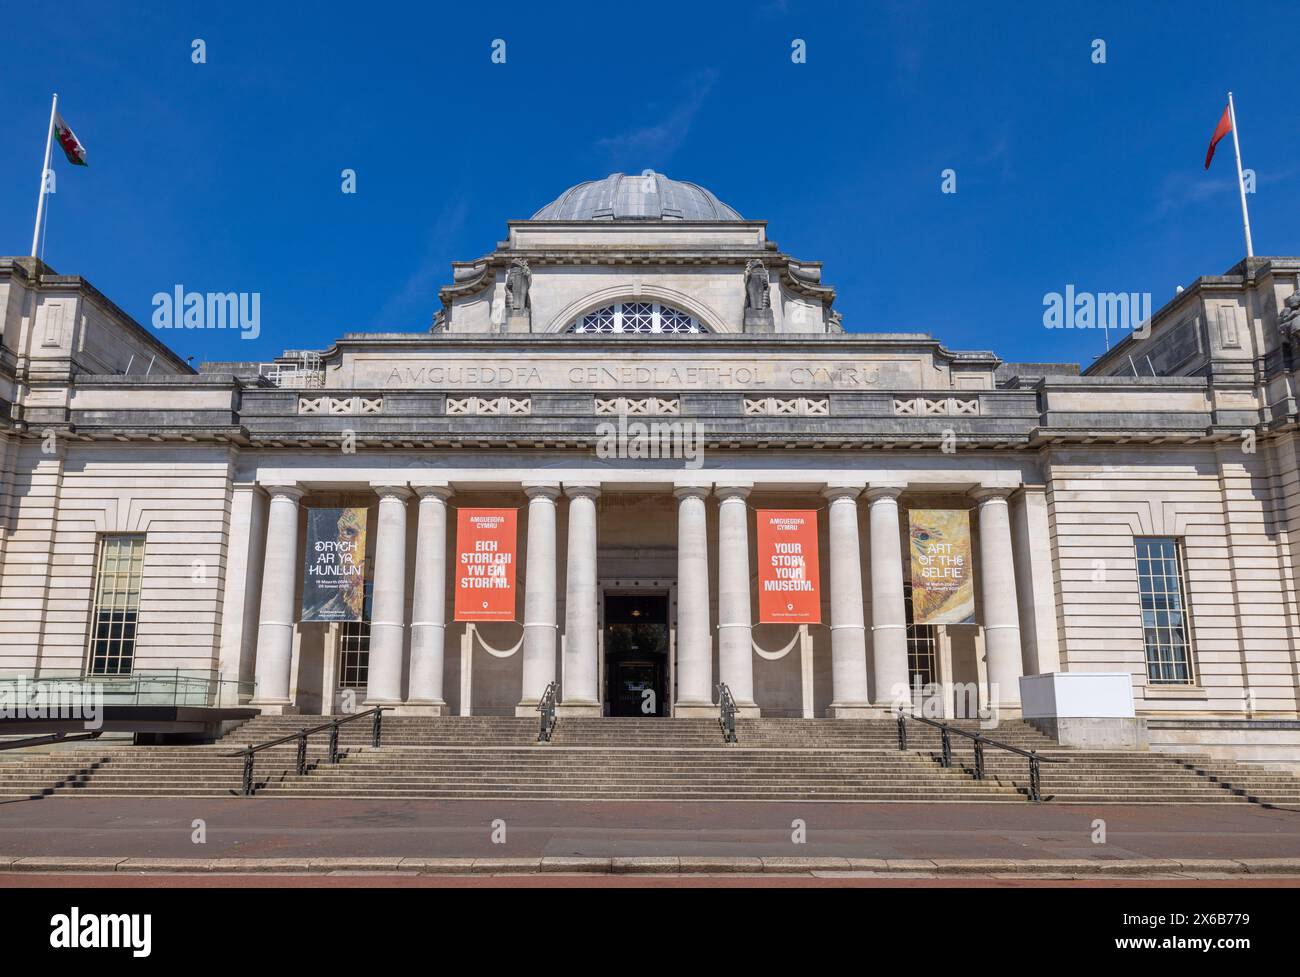 Musée national, Cardiff, pays de Galles Banque D'Images